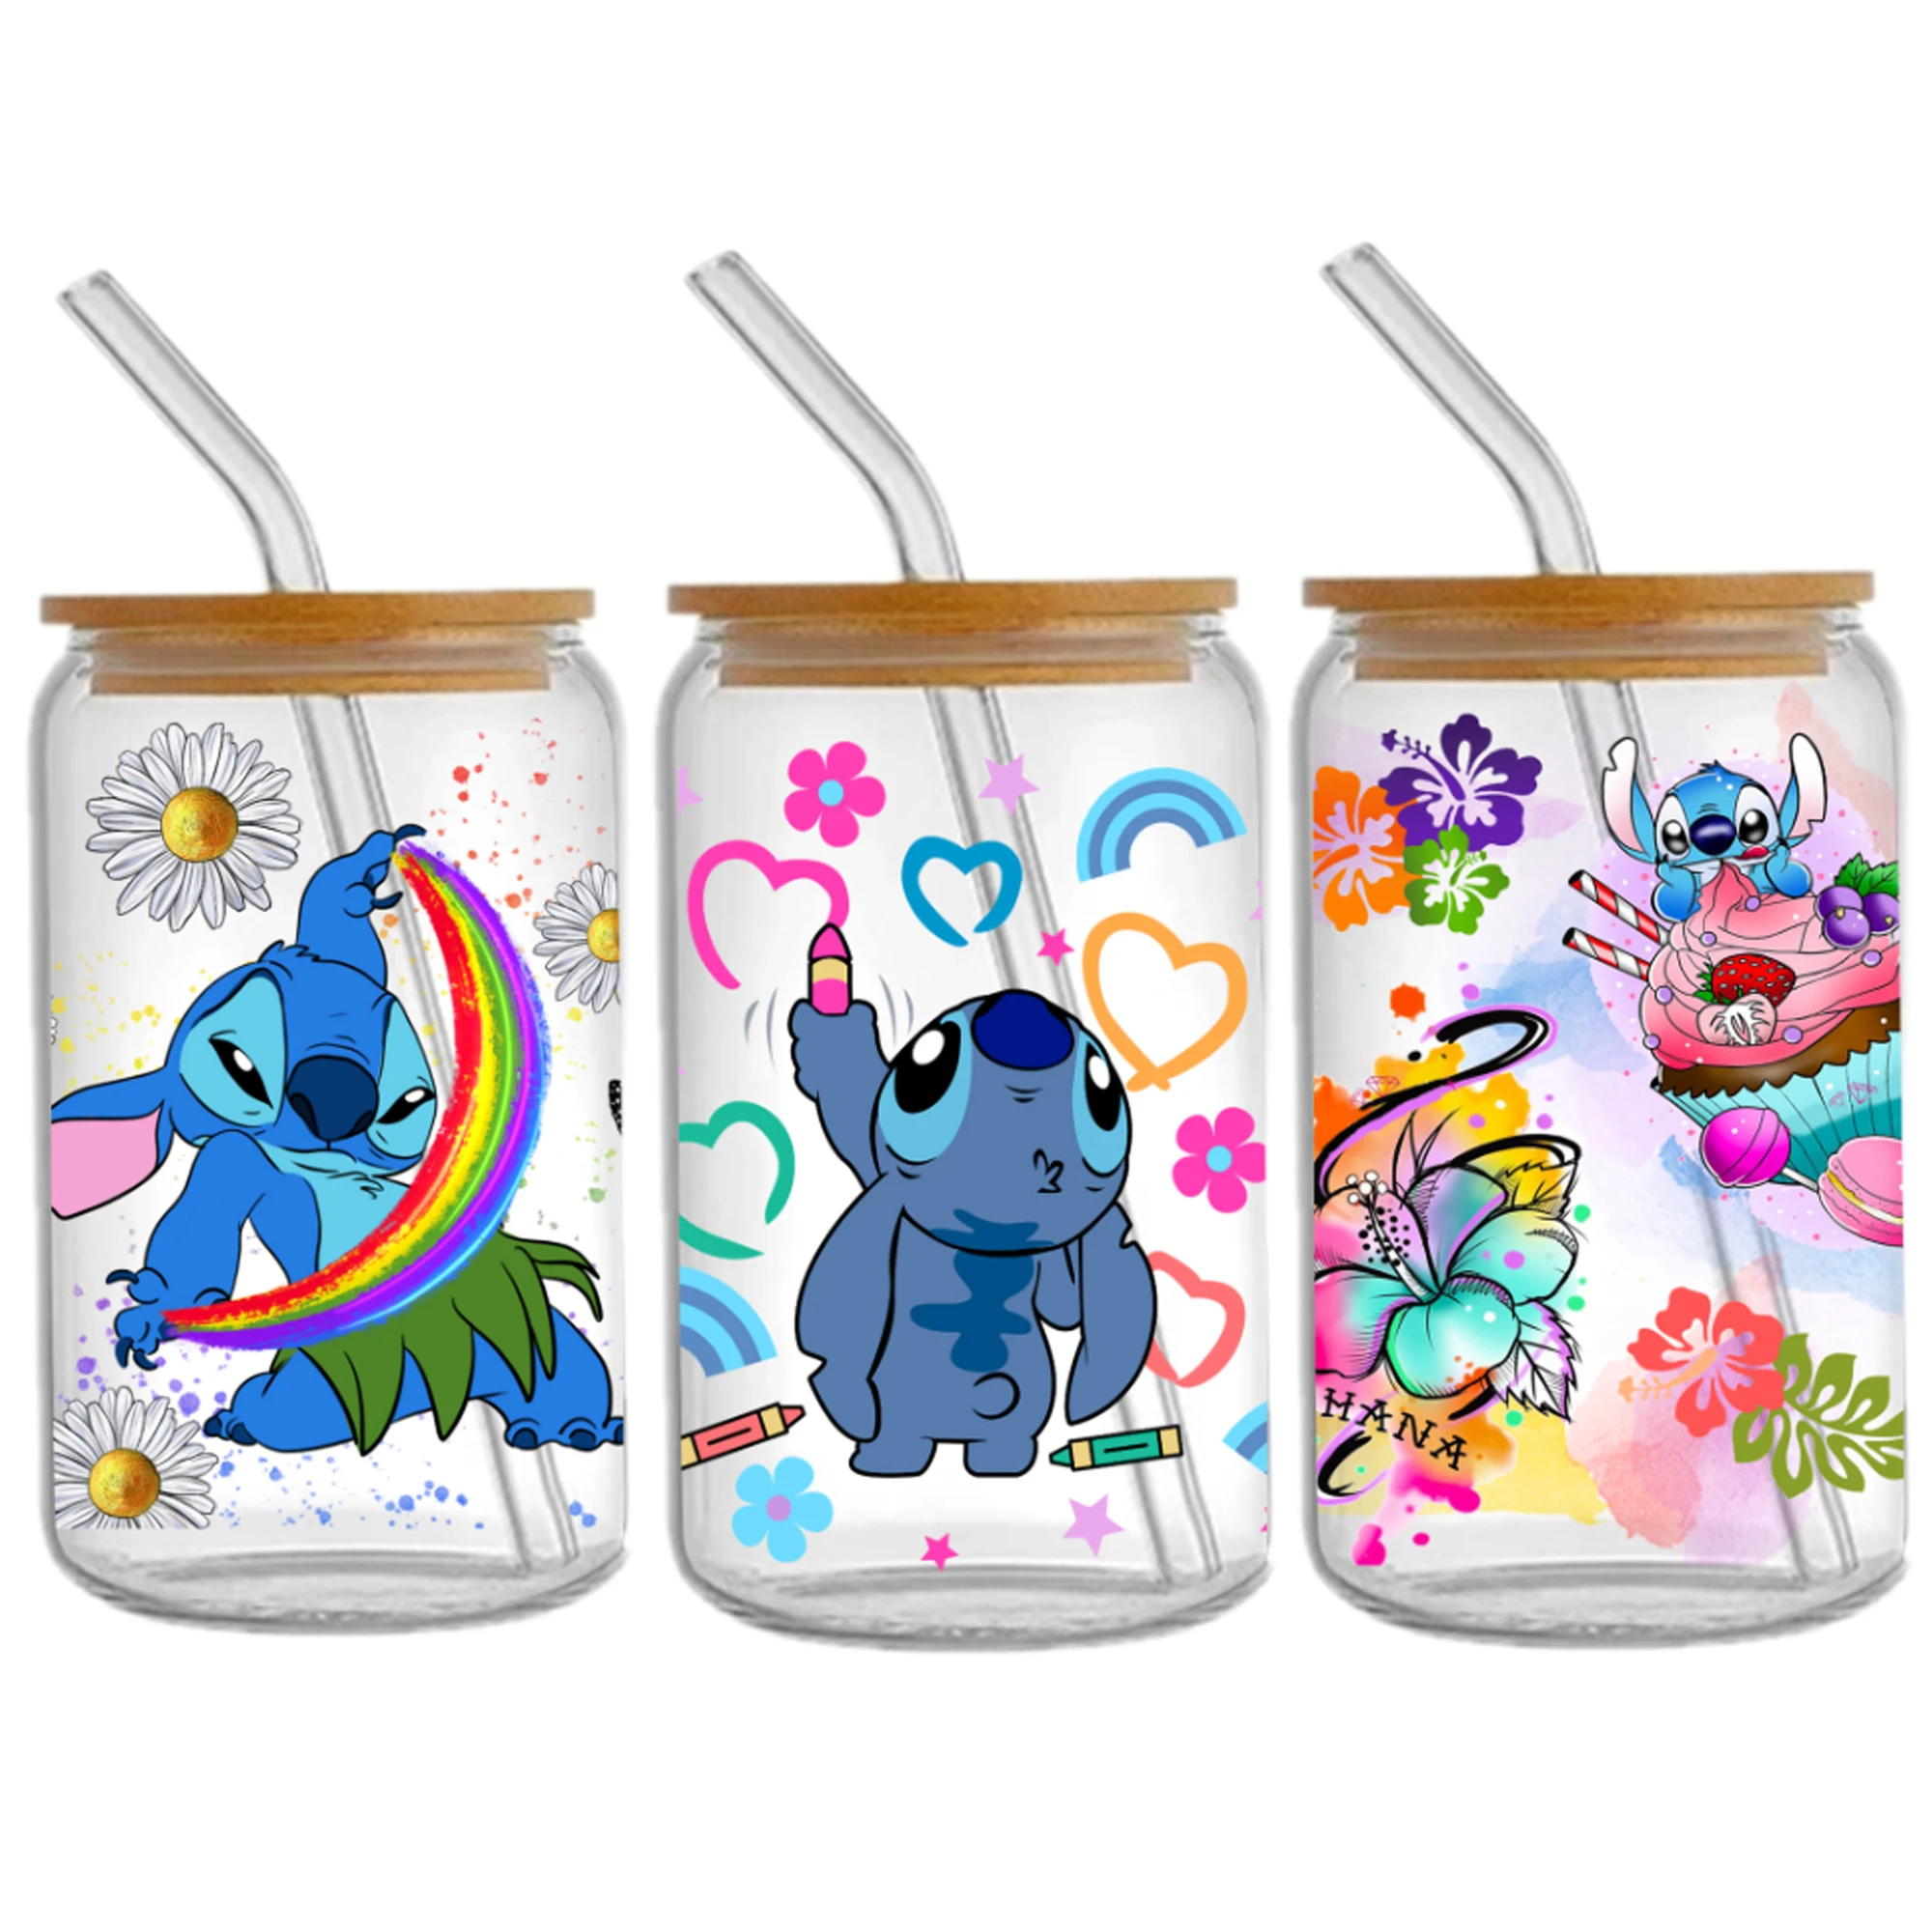 

Наклейки на чашки Disney Stitch 16 унций DTF, классная индивидуальная наклейка для переноса УФ-пленки, пользовательские этикетки, самоклеящиеся водонепроницаемые наклейки с логотипом «сделай сам»